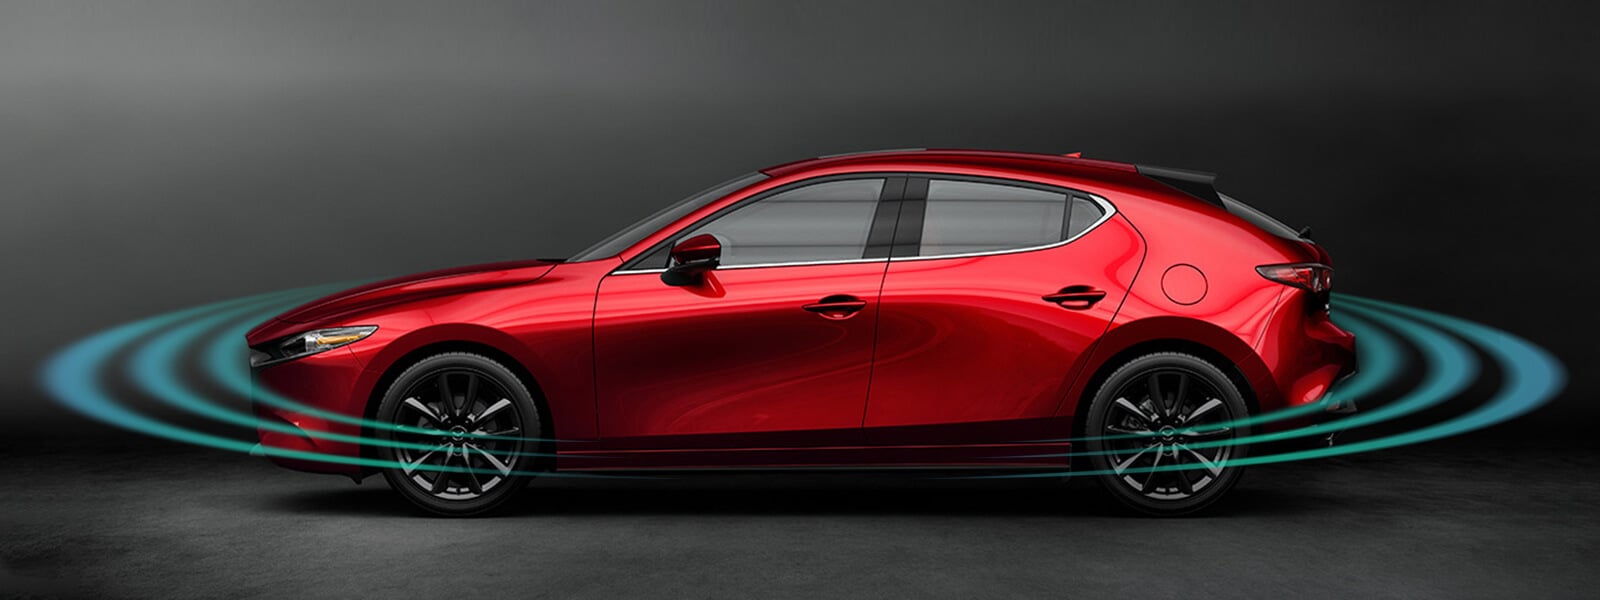 Plan flou côté passager arrière d’une Mazda3 rouge sur l’autoroute, avec des impulsions radar rayonnant vers l’avant et l’arrière.